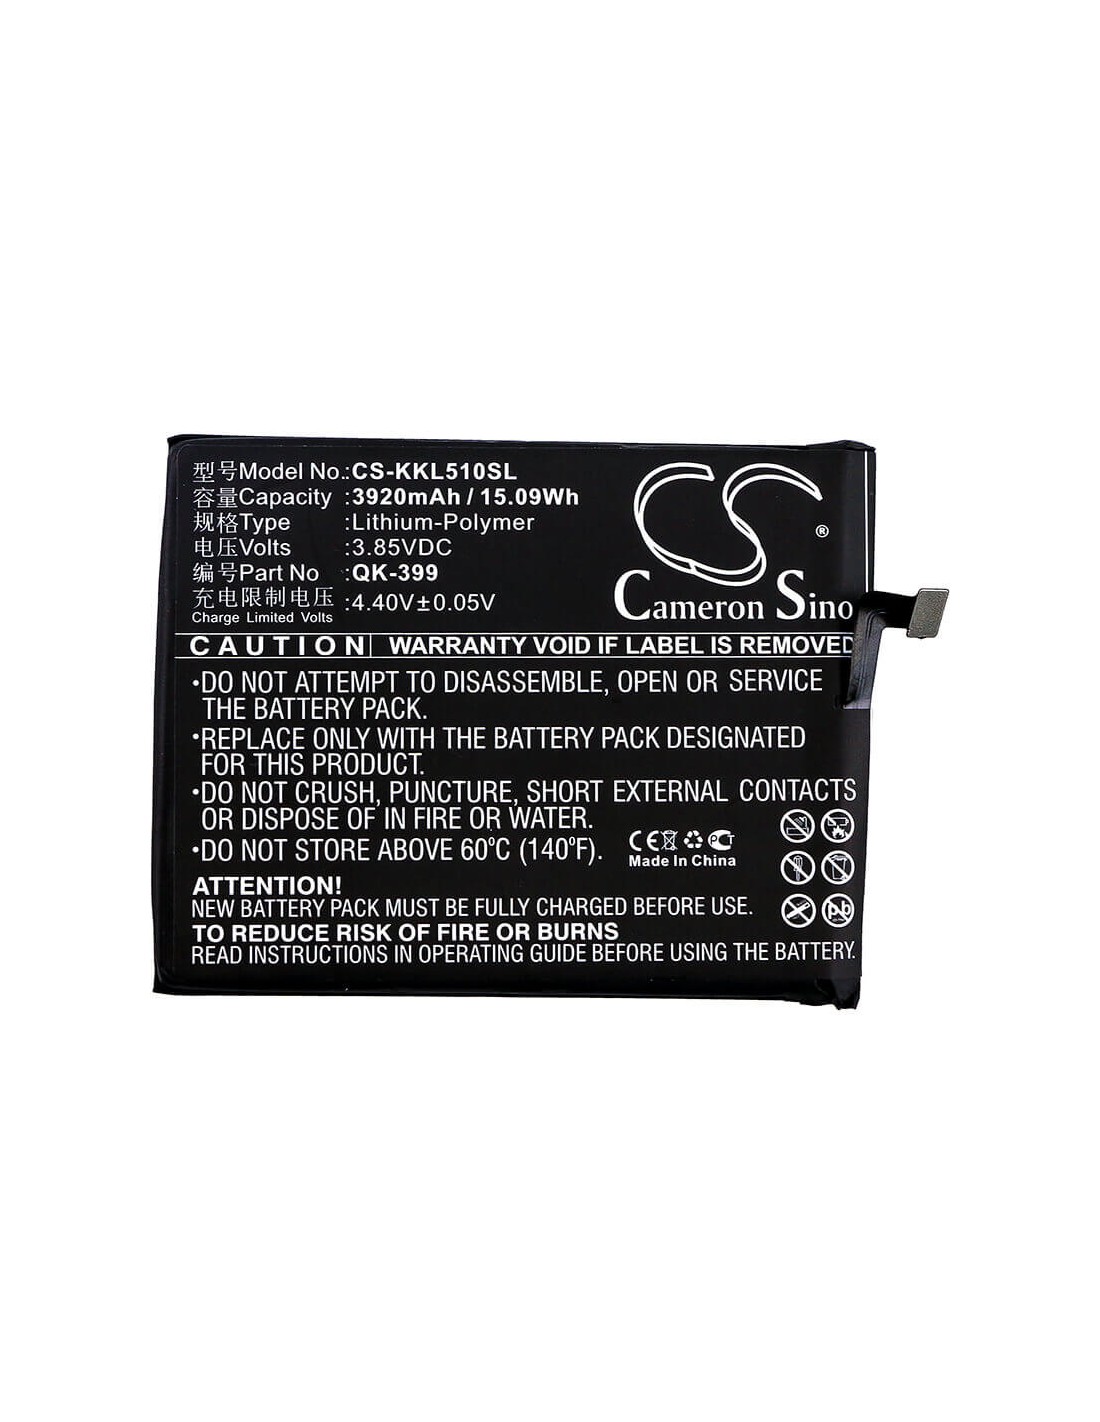 Battery for Qiku, N5, N51605-a01, N51605-a02 3.85V, 3920mAh - 15.09Wh